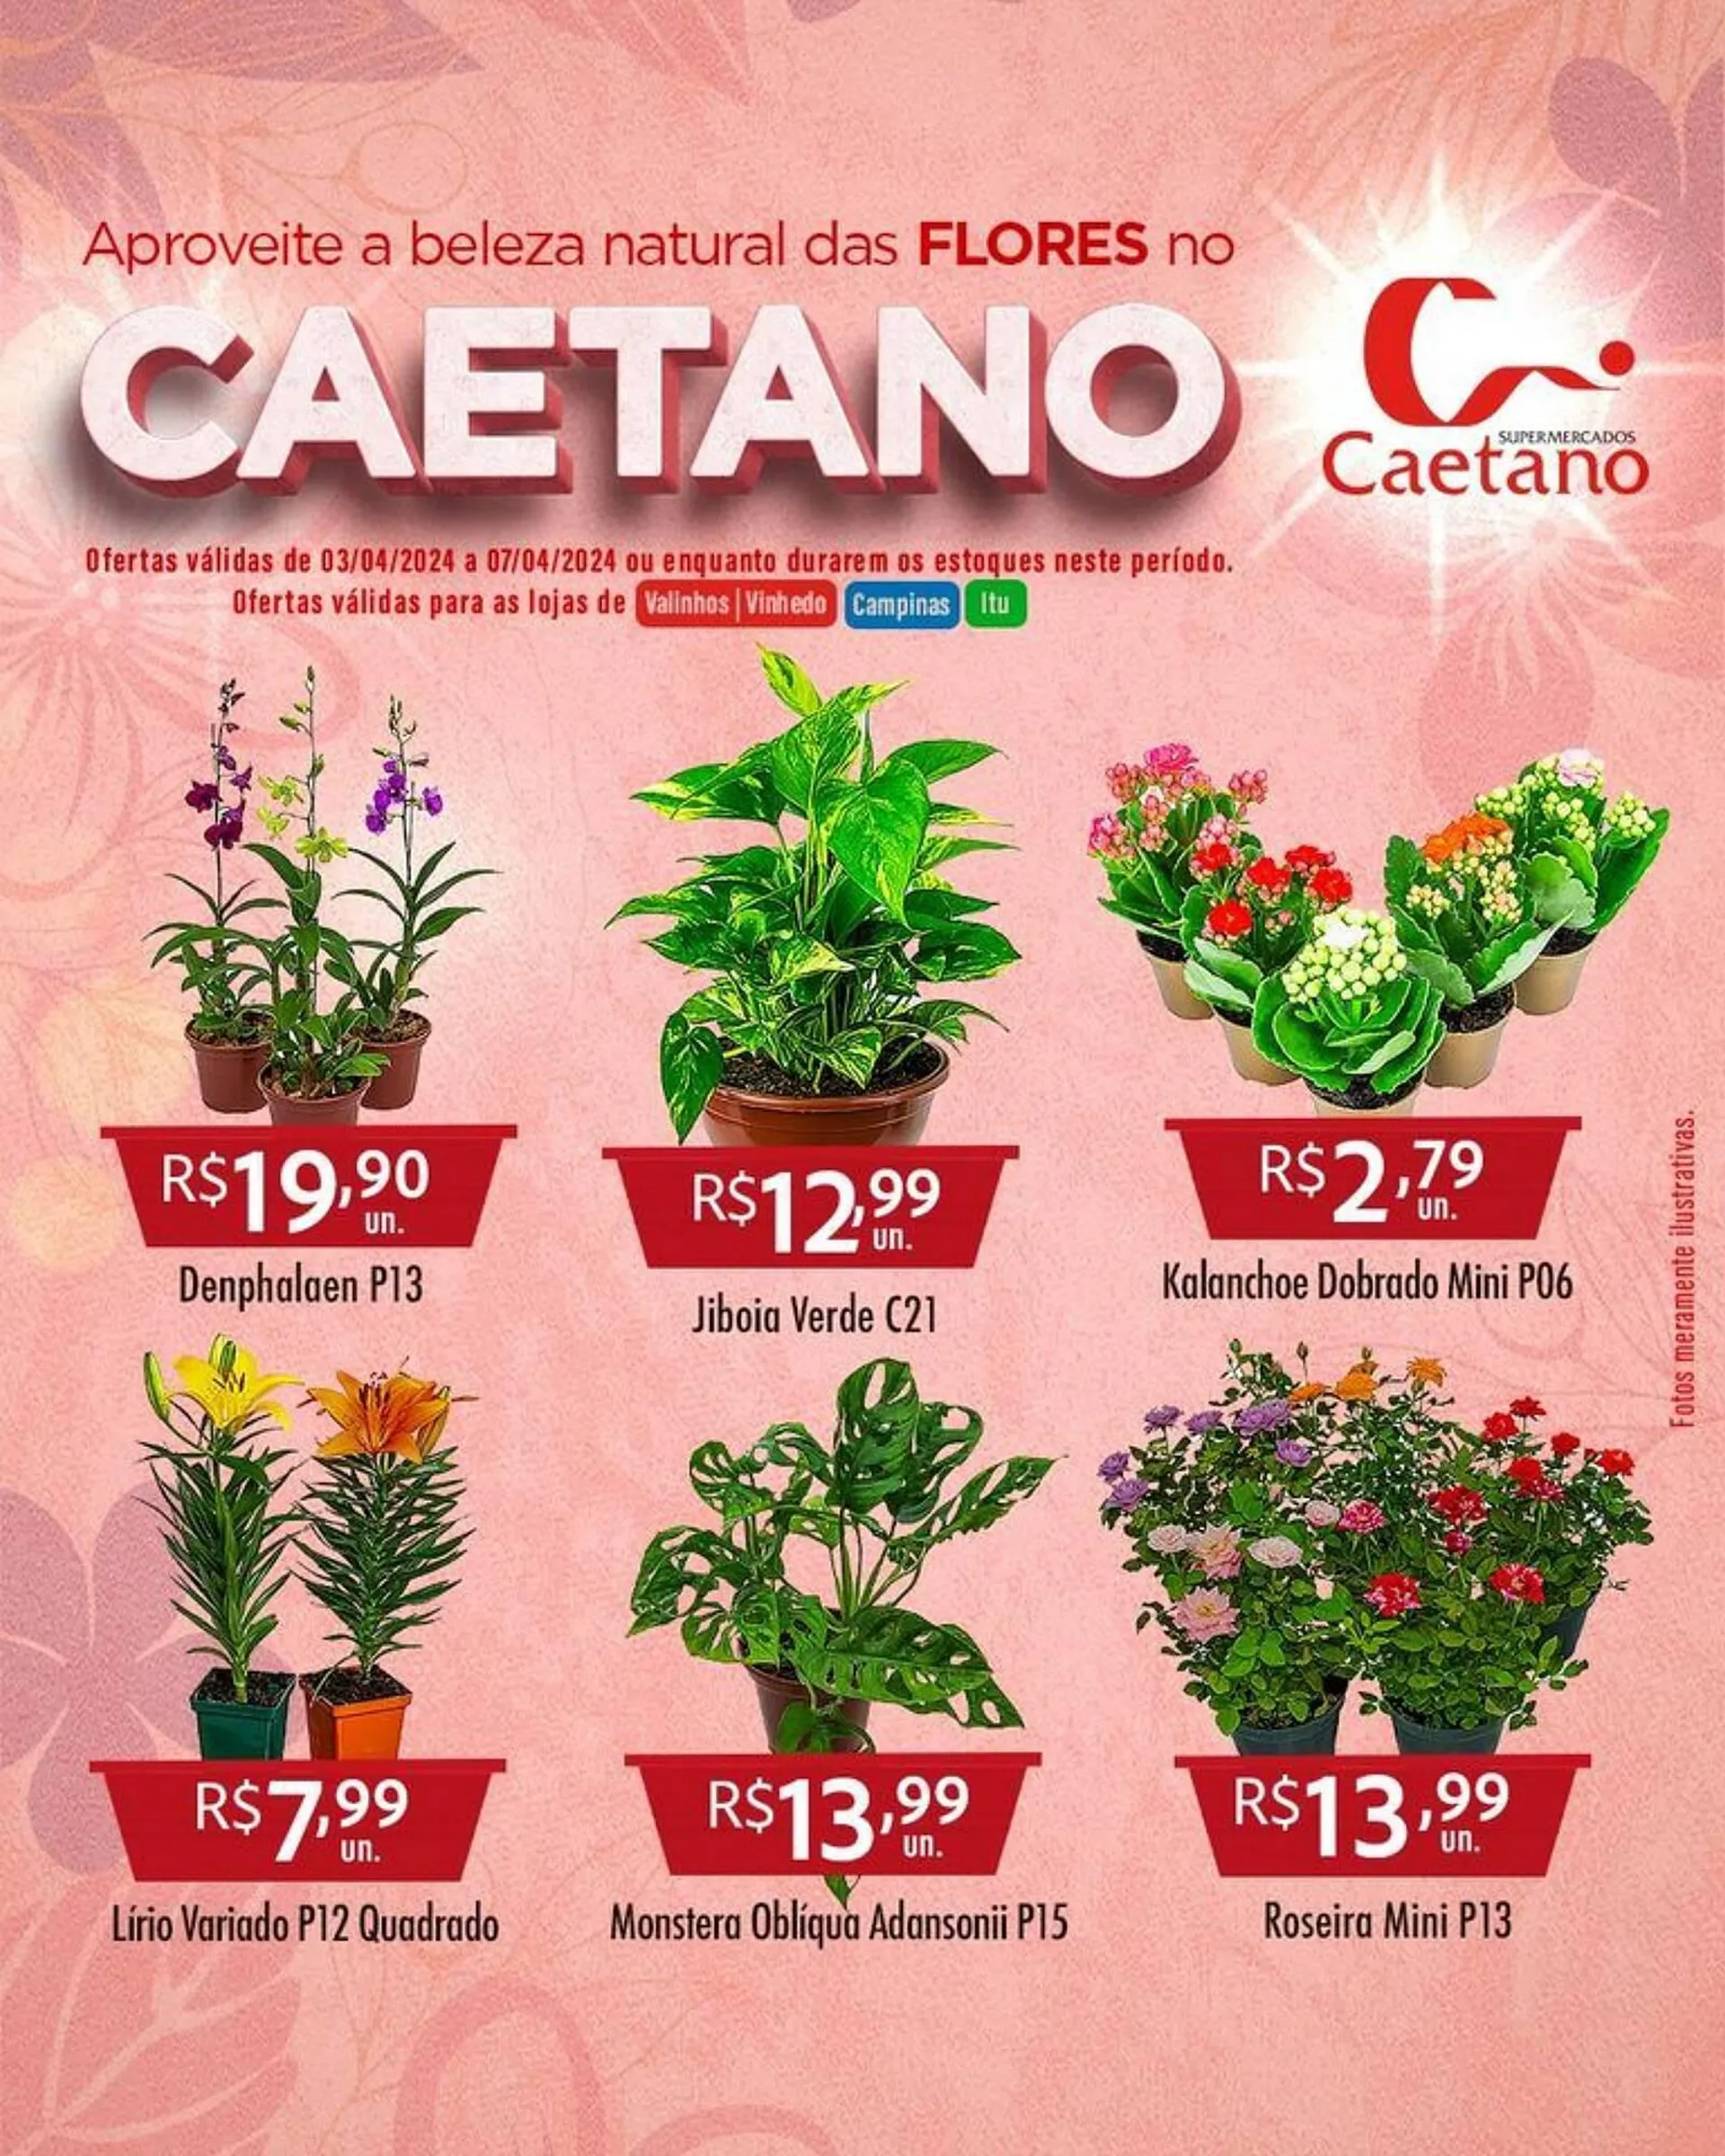 Encarte de Catálogo Supermercados Caetano 4 de abril até 7 de abril 2024 - Pagina 1